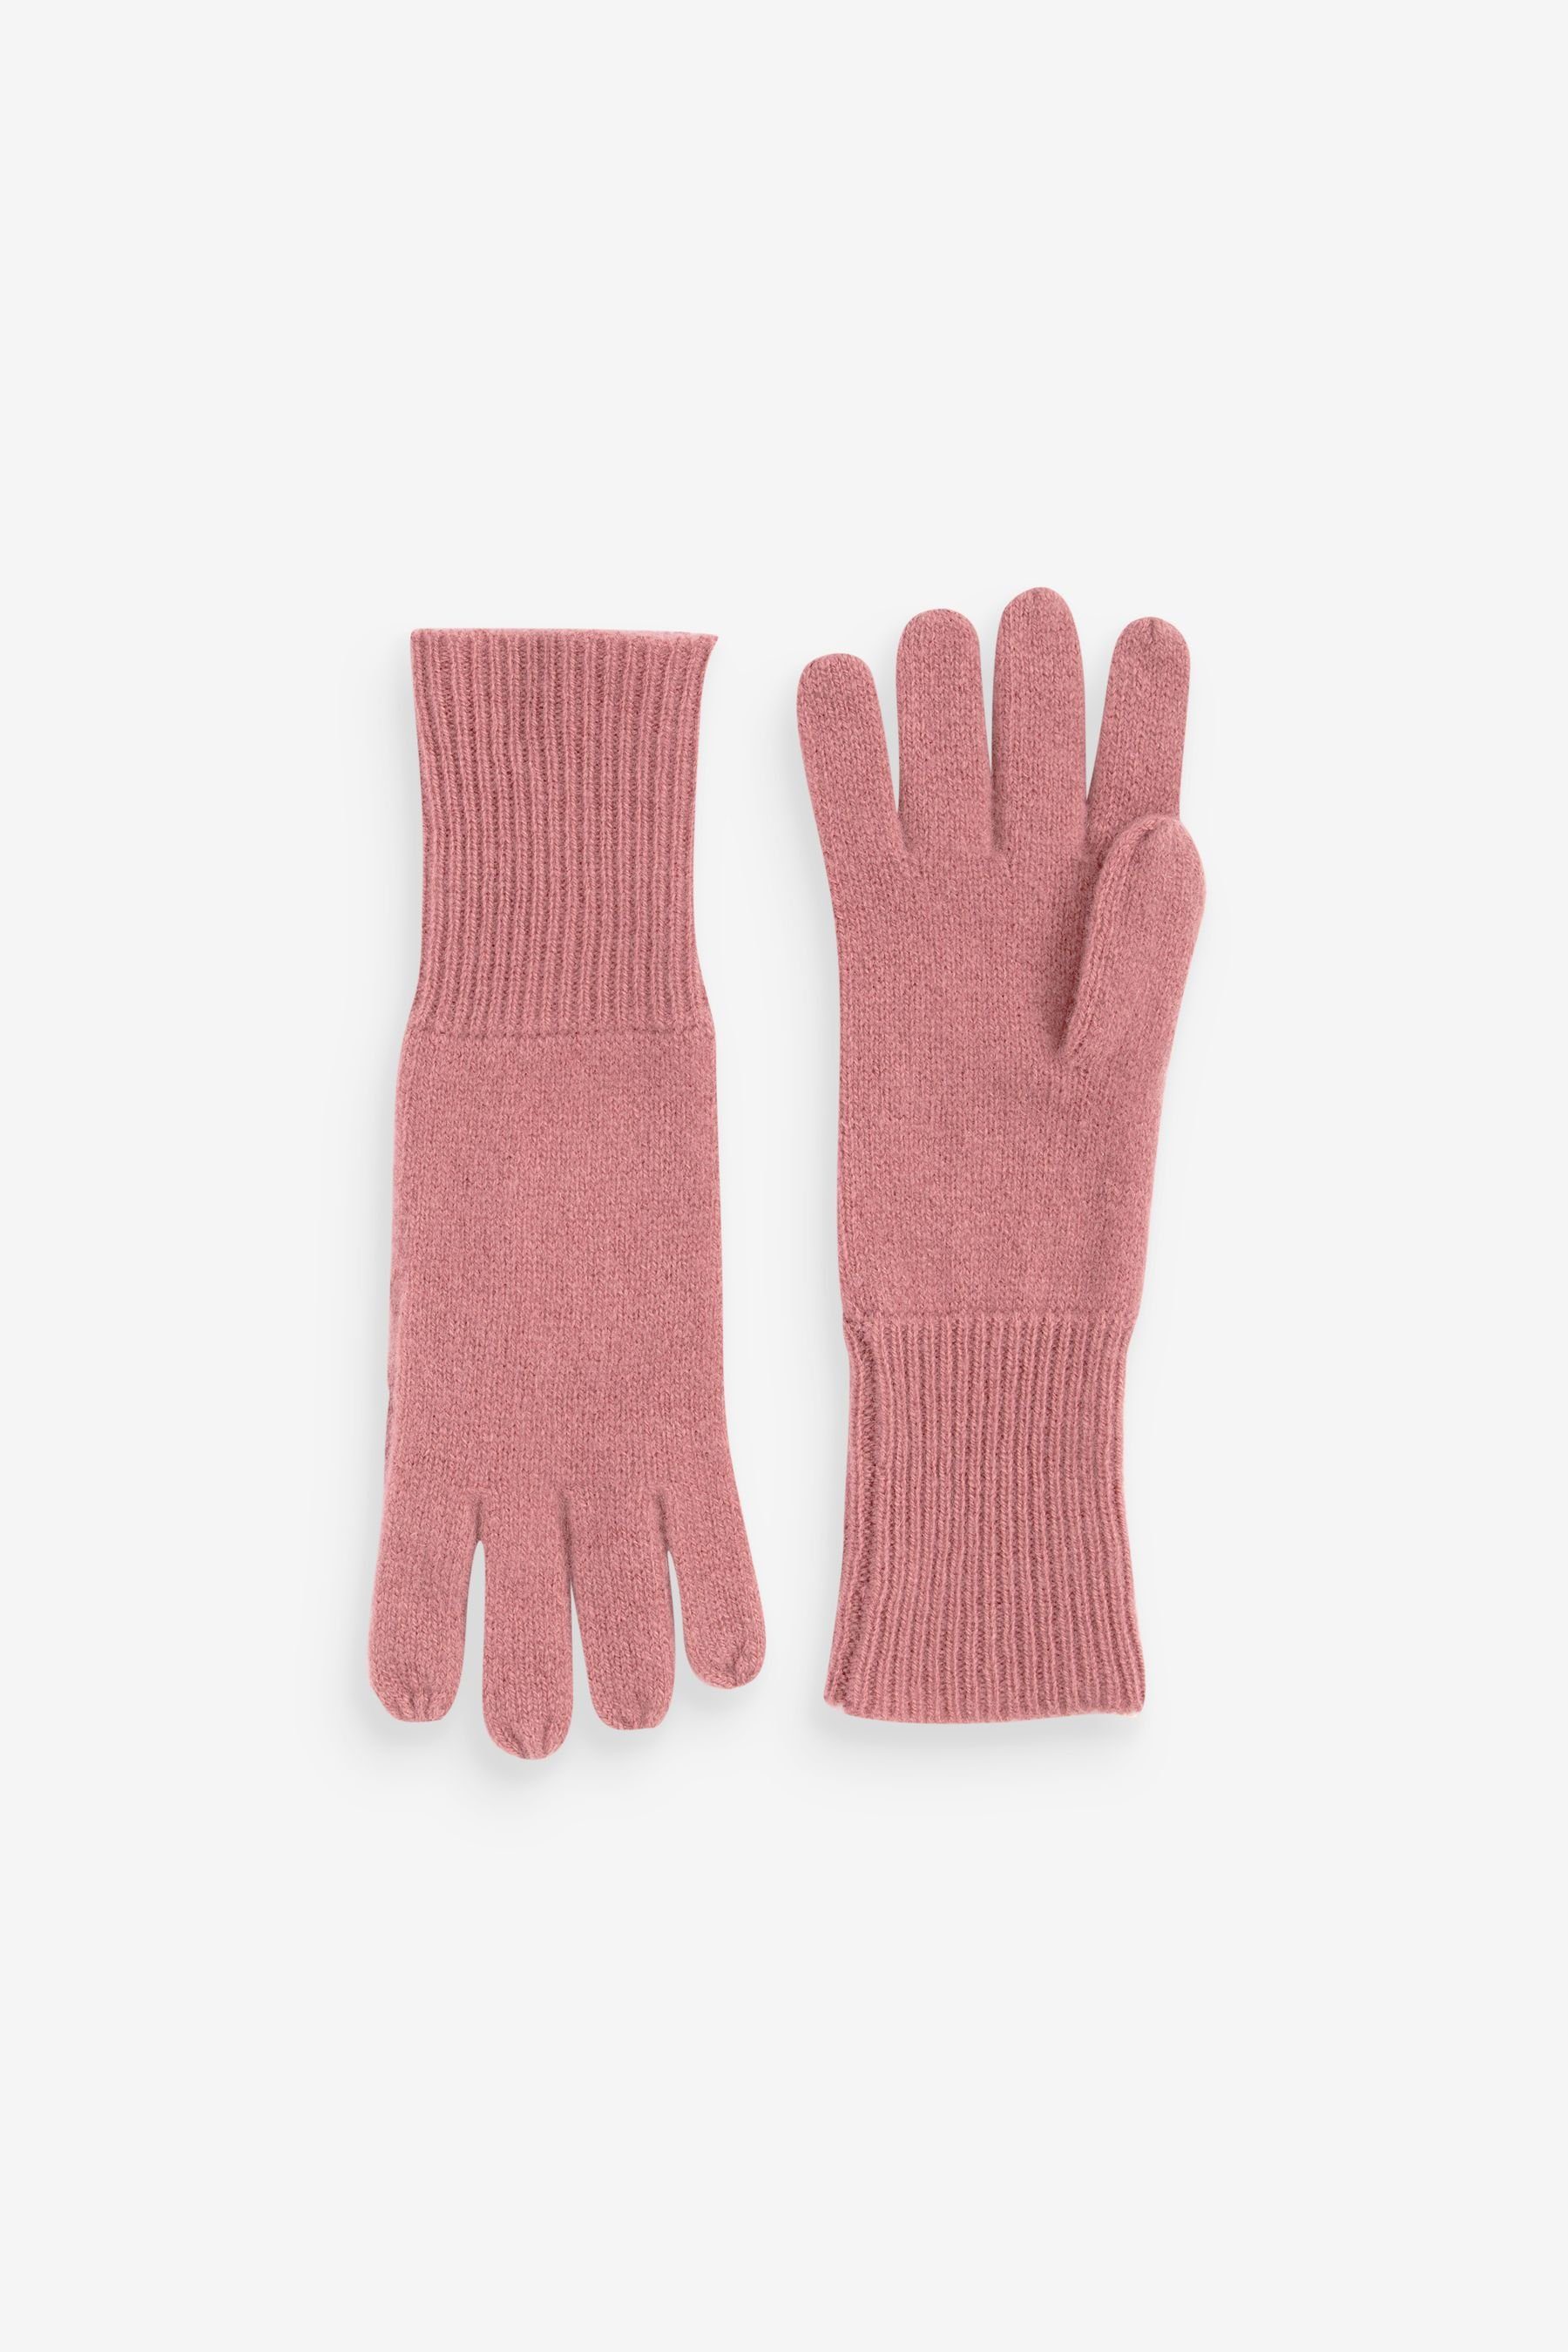 Next Strickhandschuhe Collection Luxe Handschuhe aus 100 % Kaschmir Pink